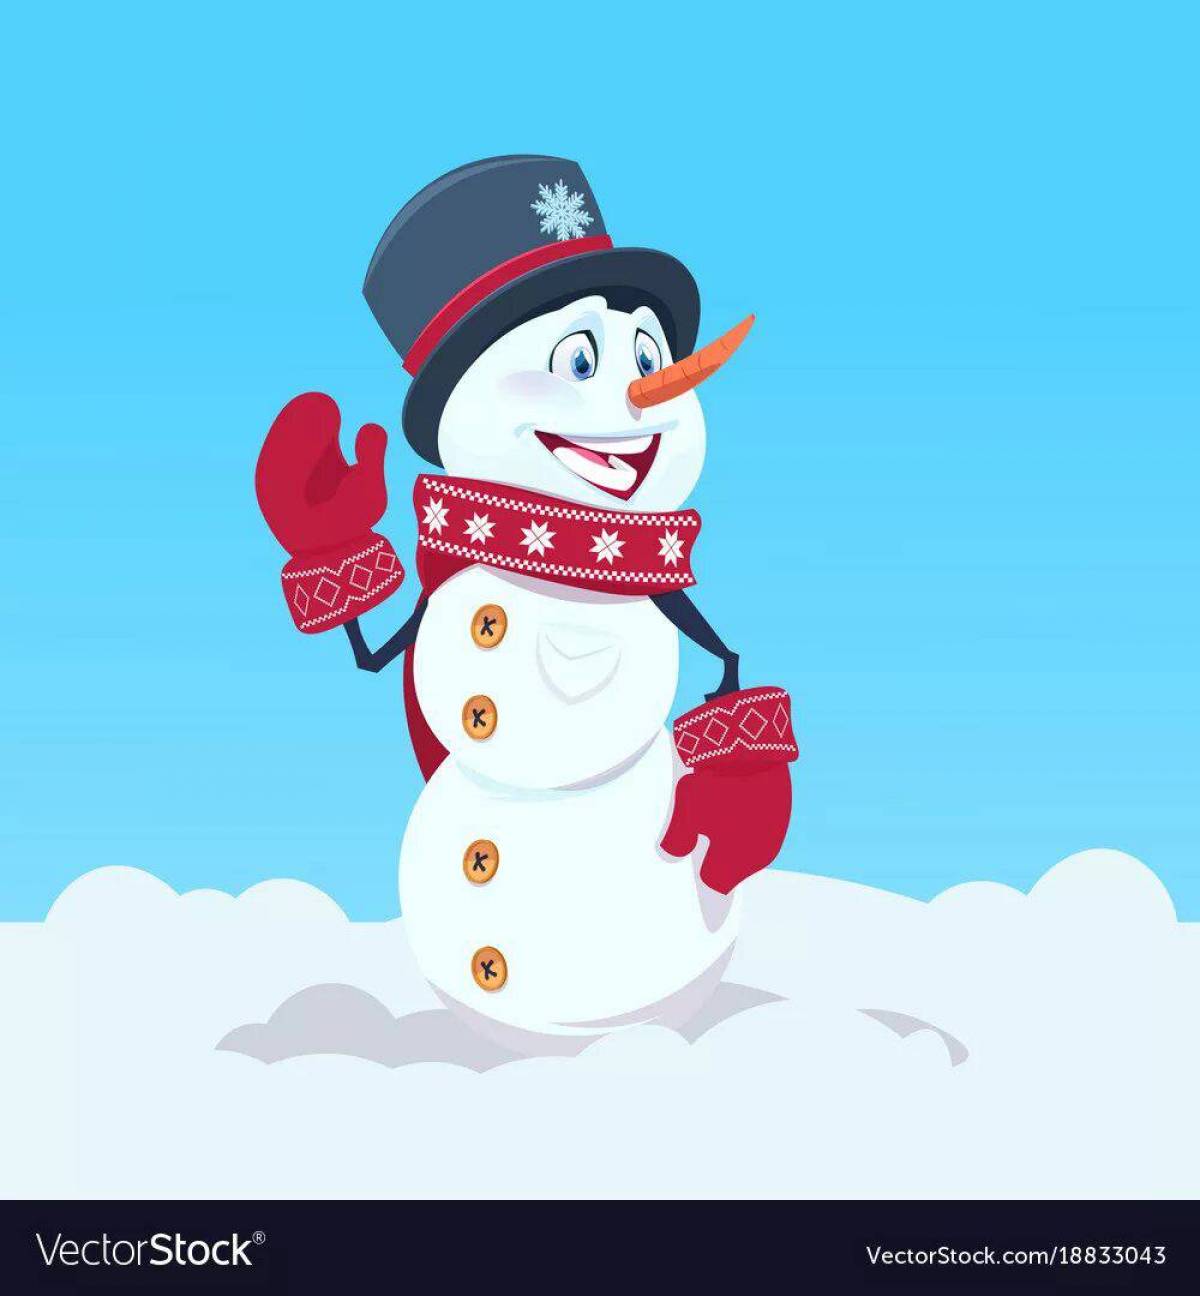 Снеговики в шапочках и шарфиках #9